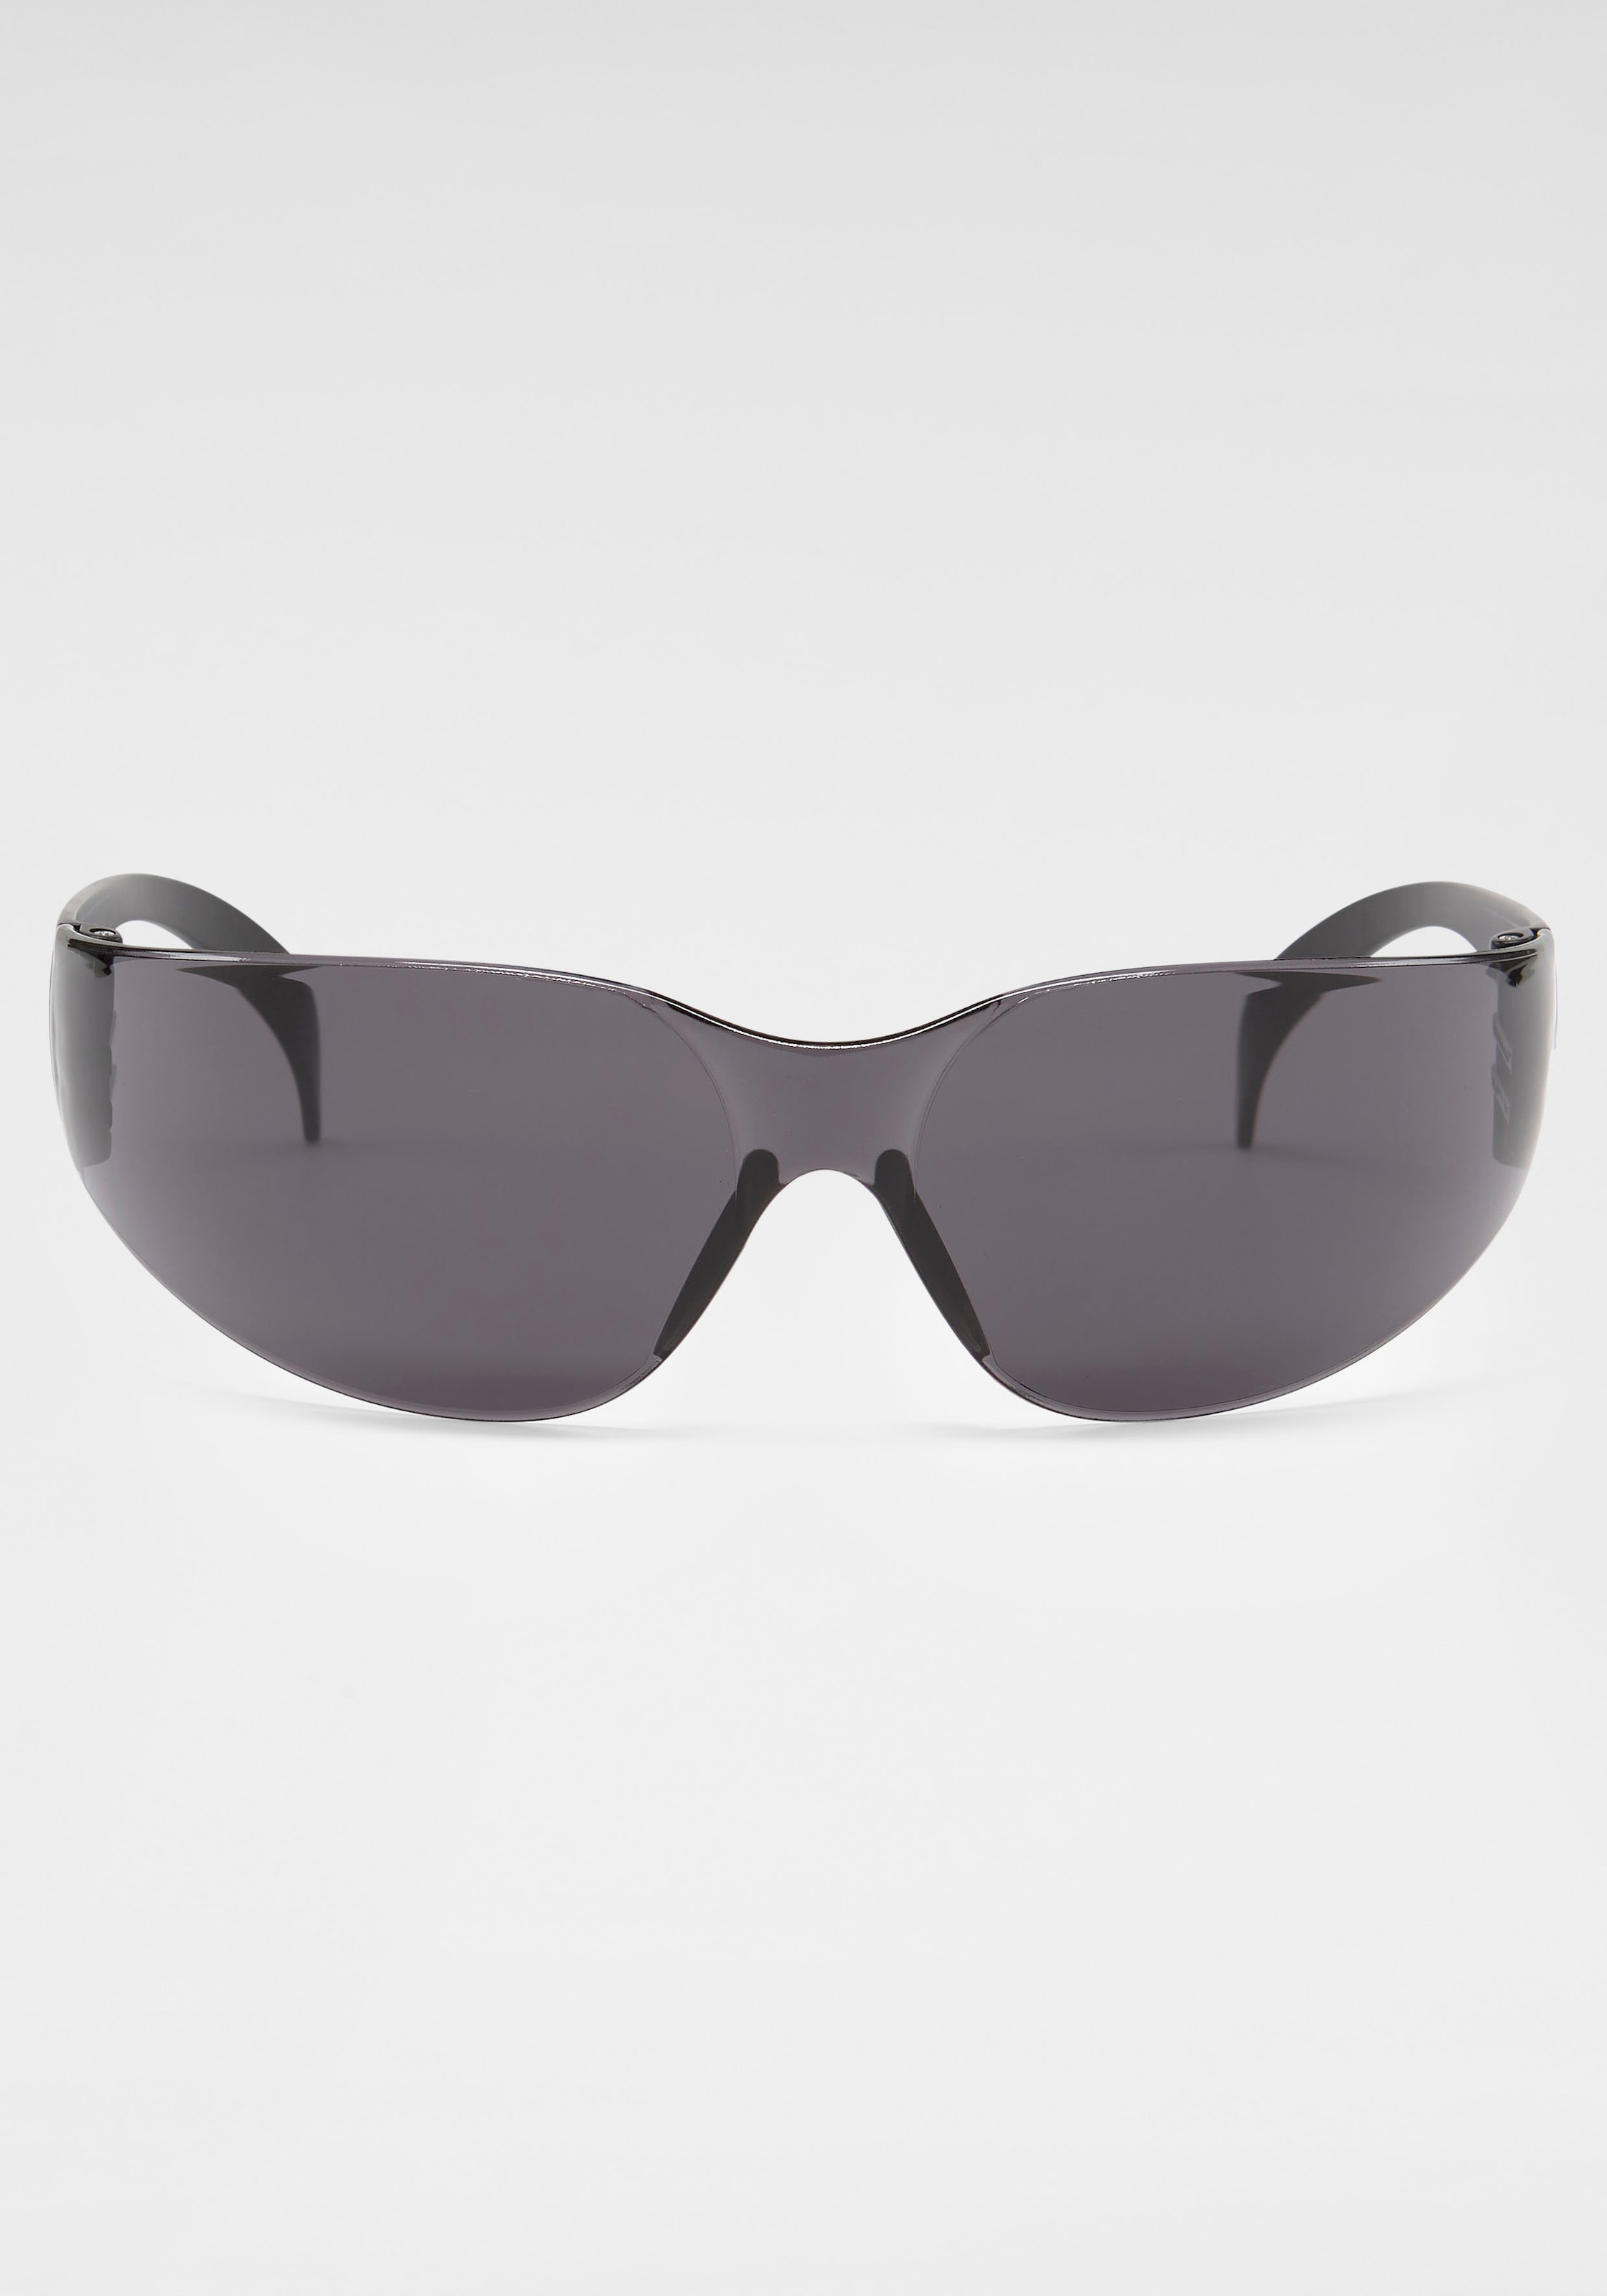 BACK IN BLACK Eyewear Sonnenbrille, shoppen online bei Randlos OTTO